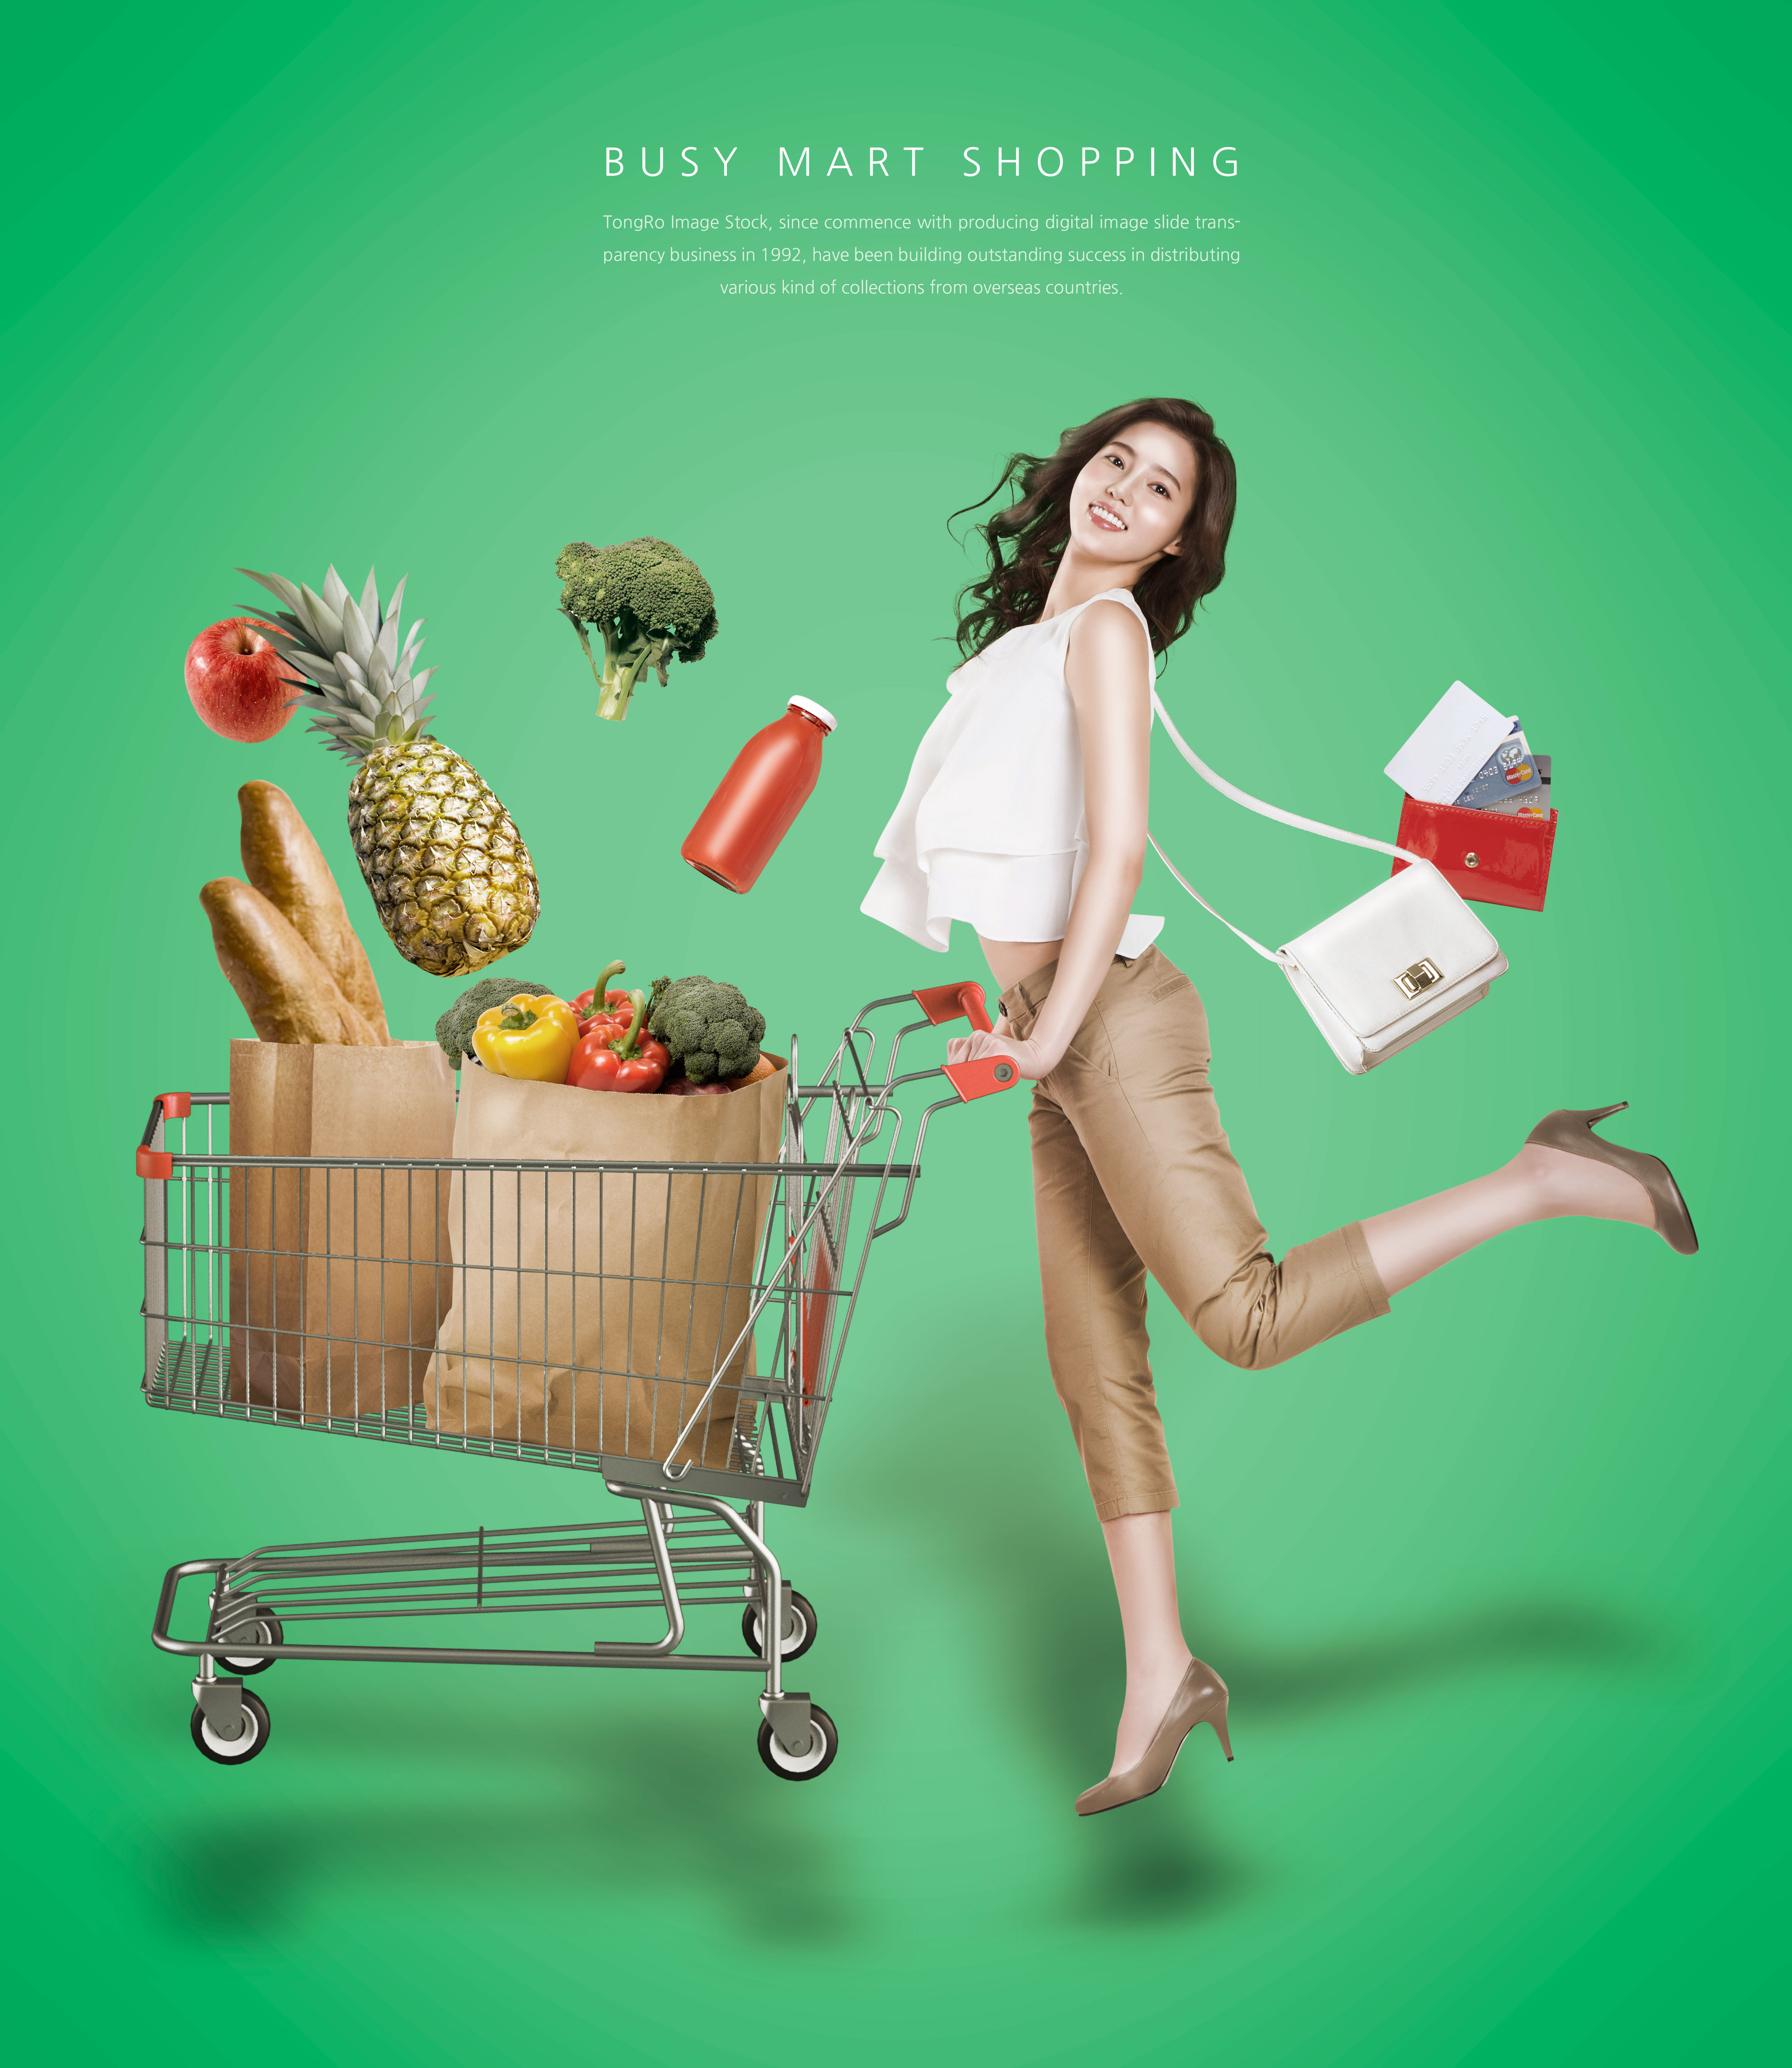 超市购物促销活动海报模板psd素材插图